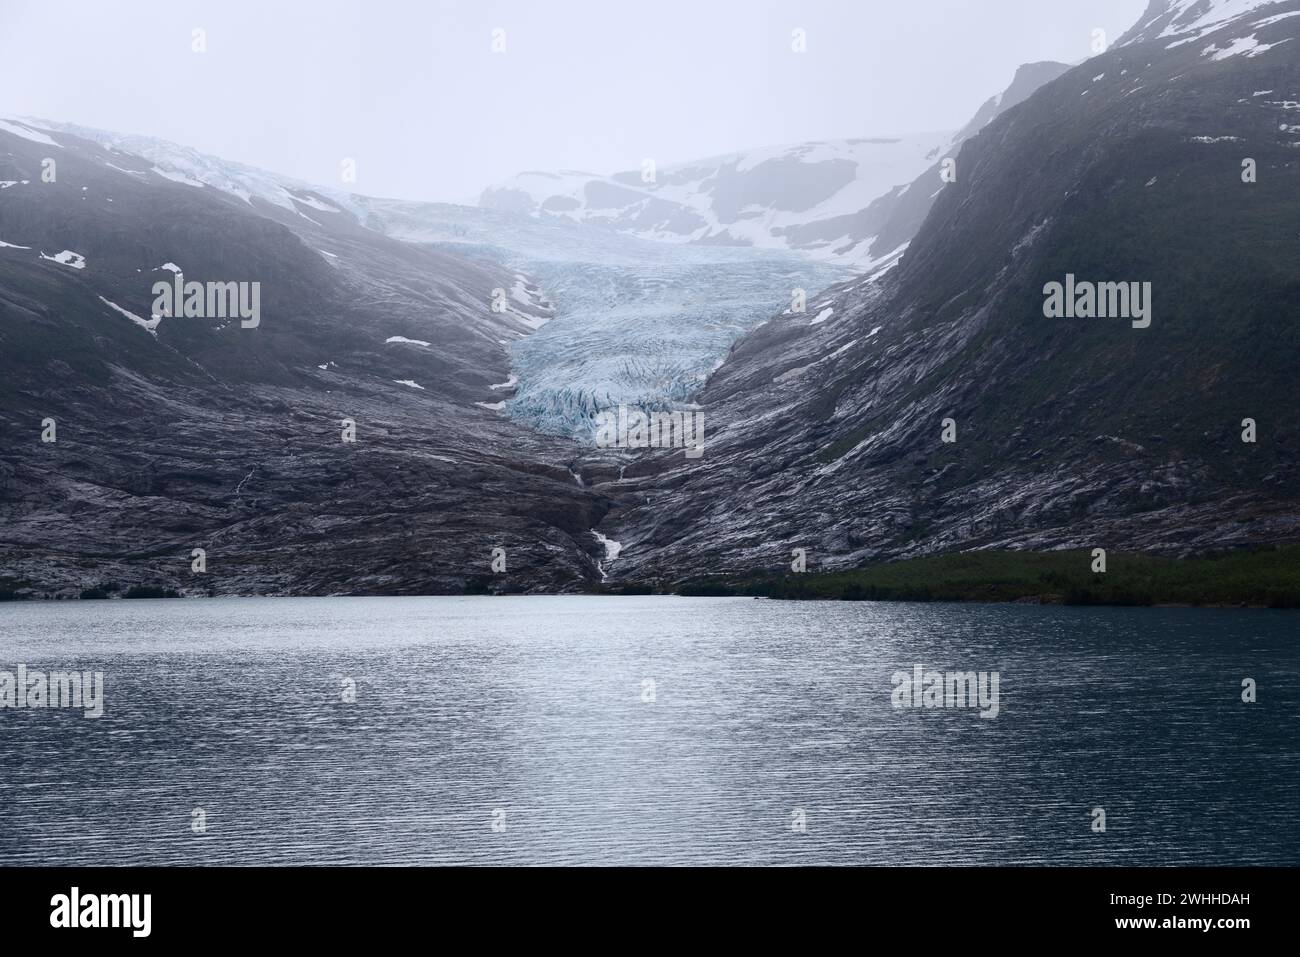 Il ghiacciaio Svartisen, una distesa ghiacciata scintillante, sfocia in un lago simile a uno specchio sullo sfondo aspro delle montagne norvegesi Foto Stock